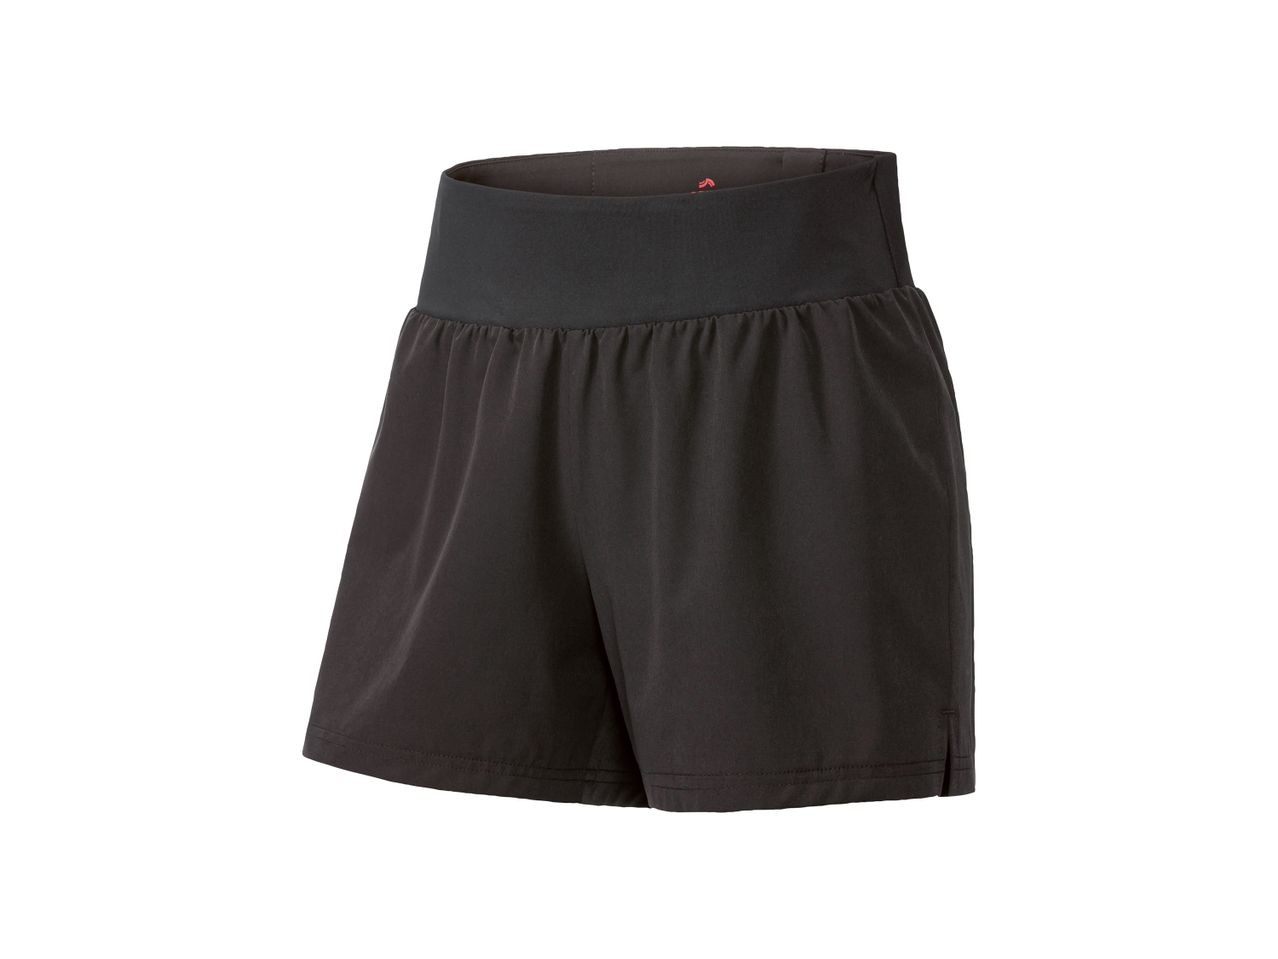 Shorts sportivi da donna , prezzo 7.99 EUR 
Shorts sportivi da donna Misure: XS-L ...